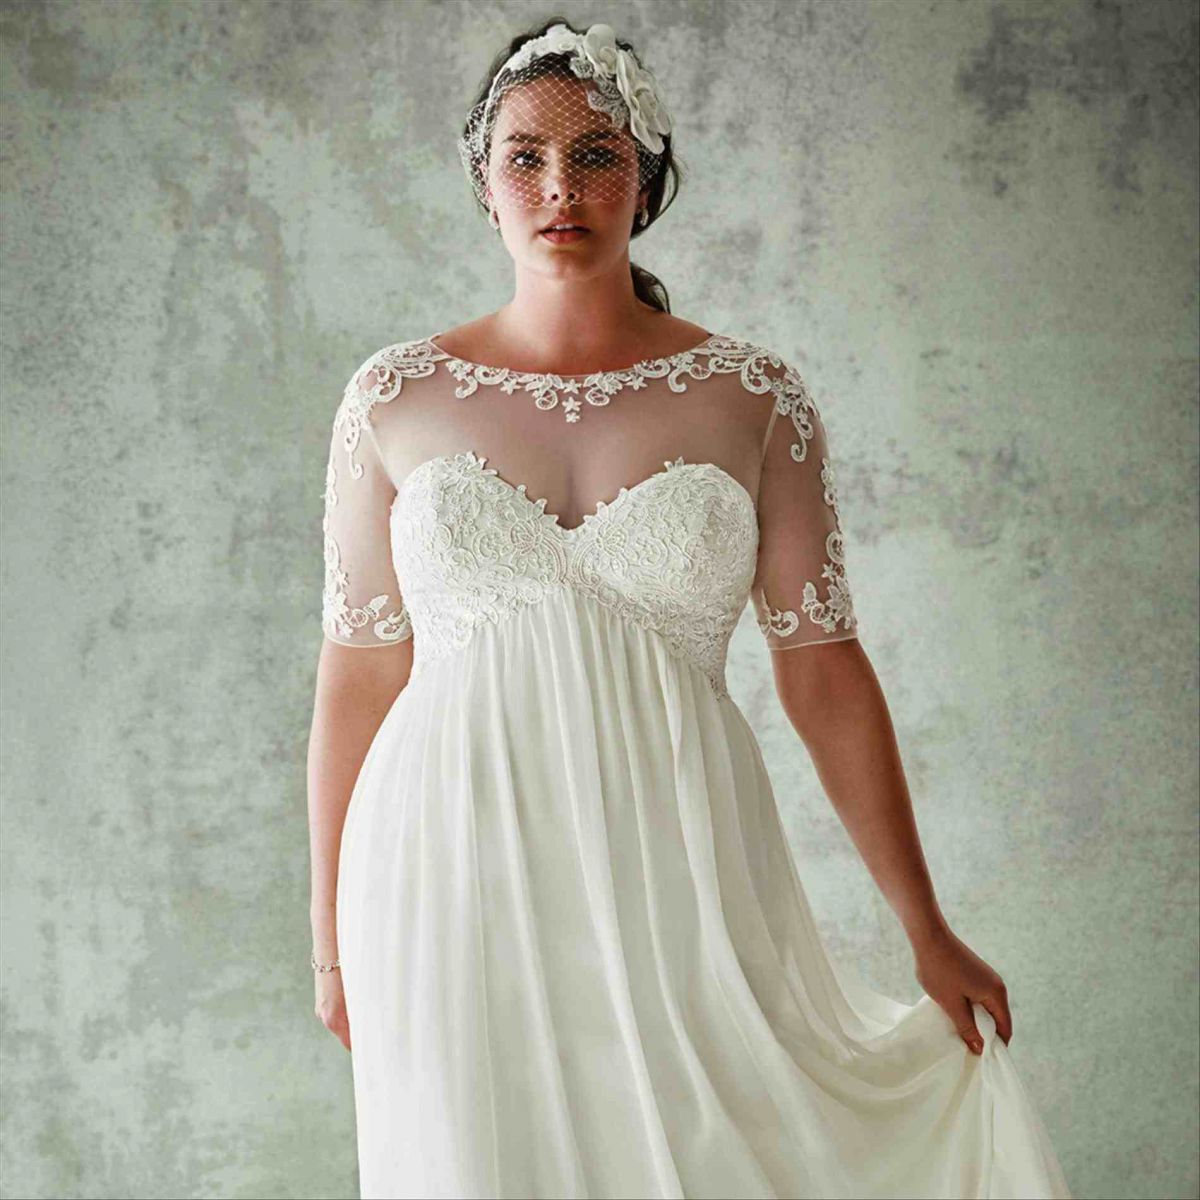 Свадебные платья для полных девушек – как выбрать элегантный наряд на свадьбу